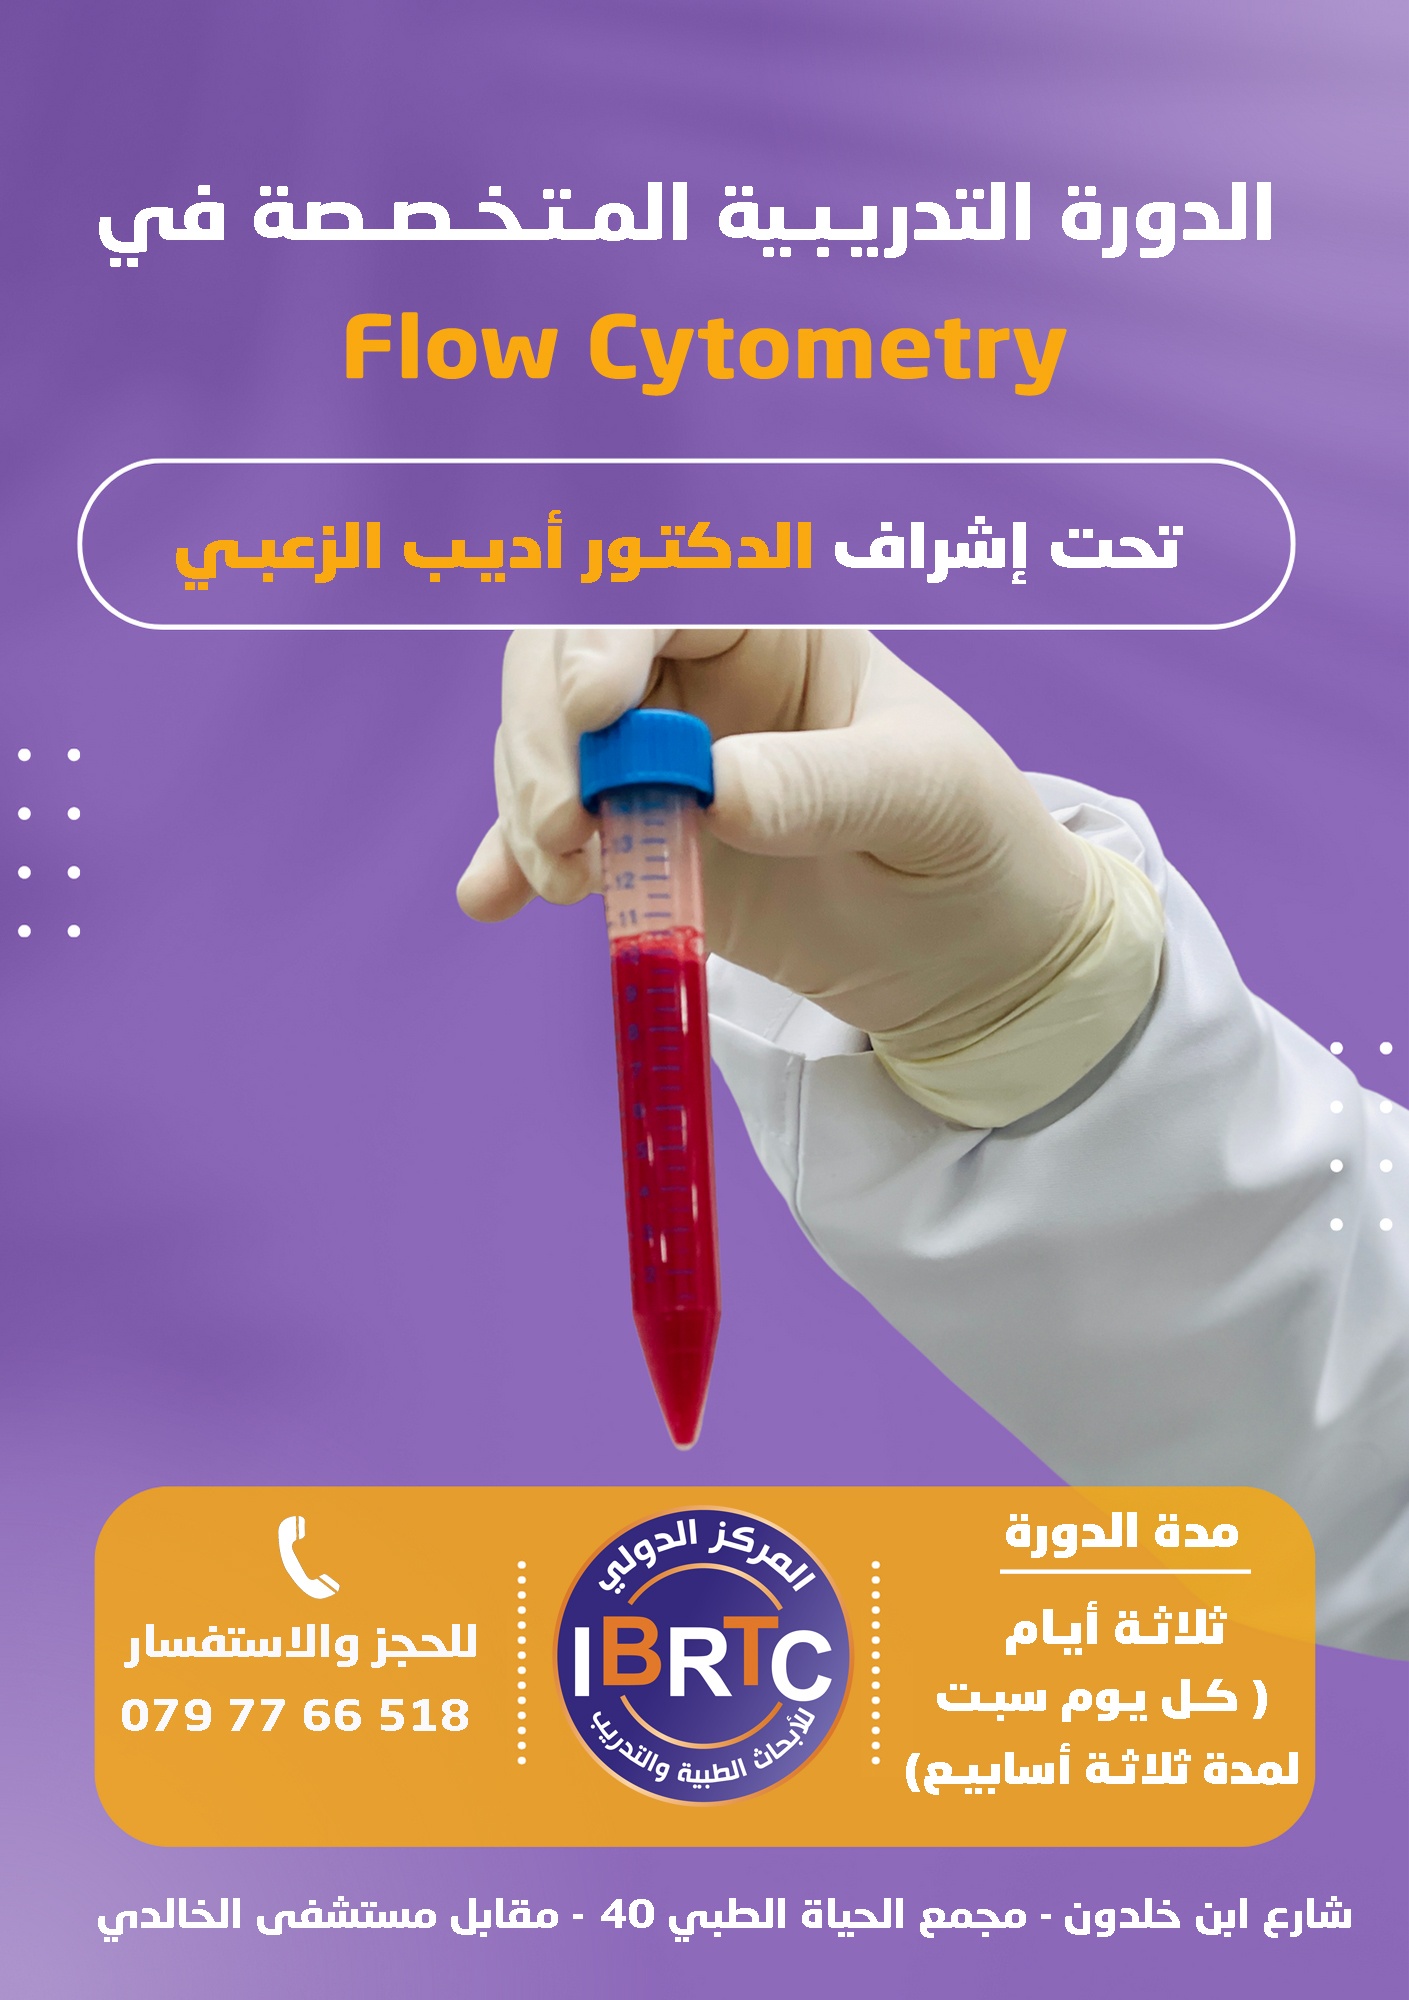 دورة Flow Cytometry، تحليل flow cytometry، Flow cytometry test ، Flow cytometry training ، دورات اتدريبية في المجال الطبي